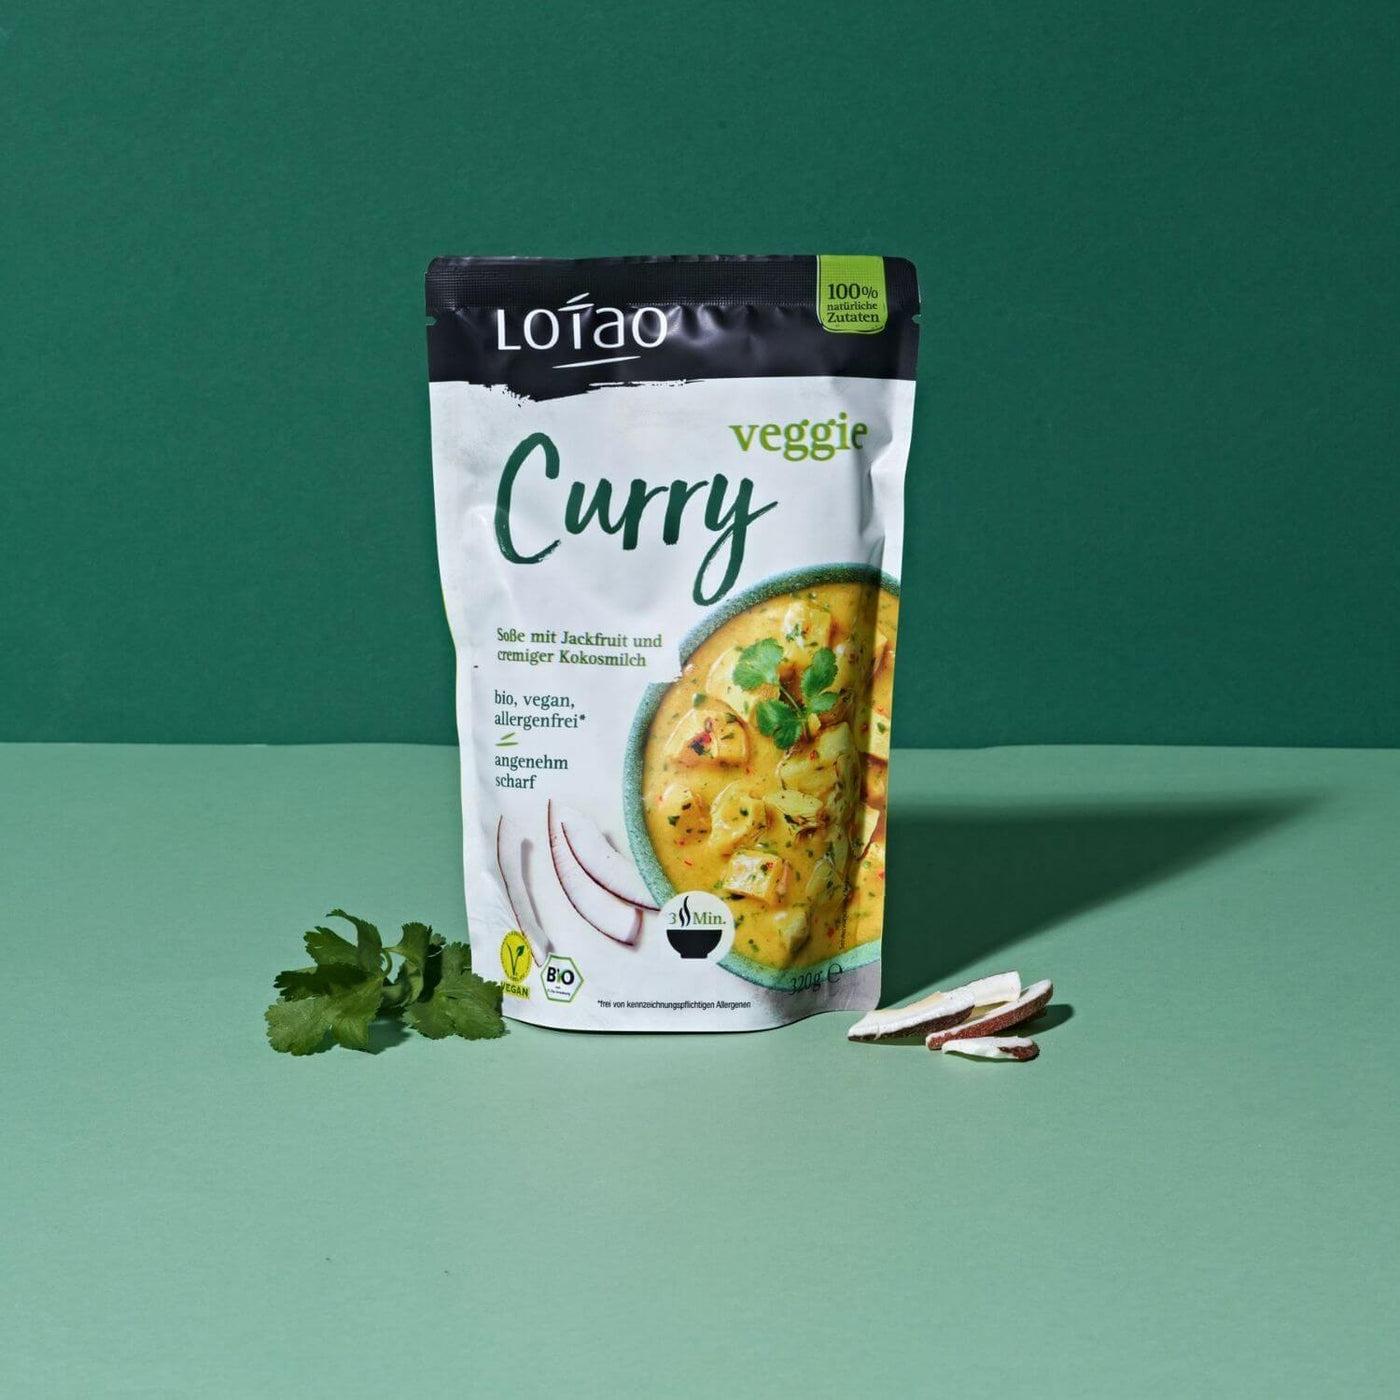 320g Packung Fertigsauce Veggie Curry von Lotao mit bio-veganer Fertigsosse mit Jackfruit als veganer Fleischersatz und Kokosmilch vor grünem Hintergrund